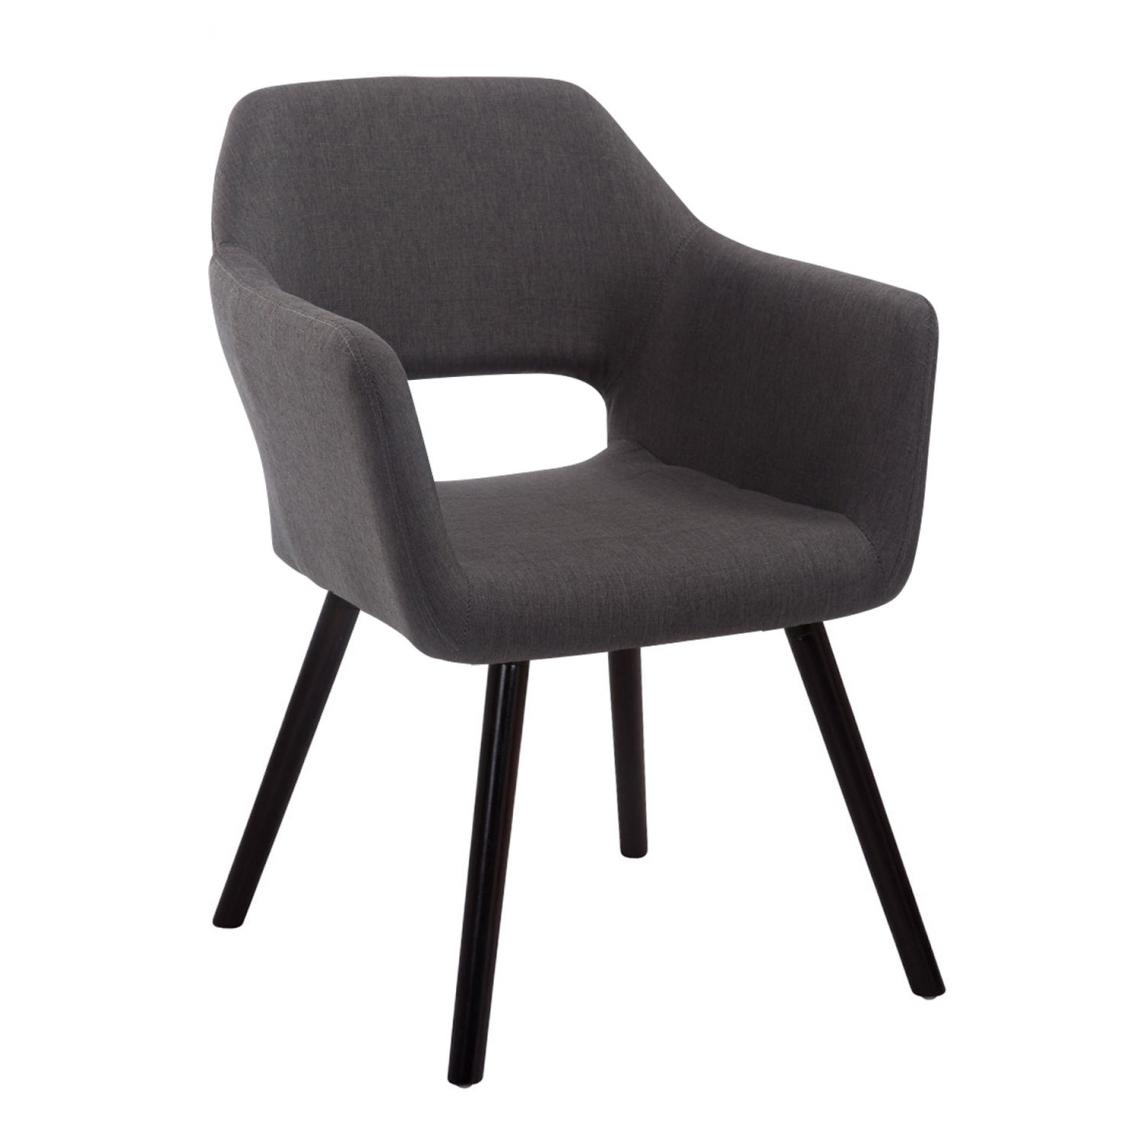 Icaverne - Moderne Chaise visiteur gamme Djibouti tissu café couleur gris foncé - Chaises